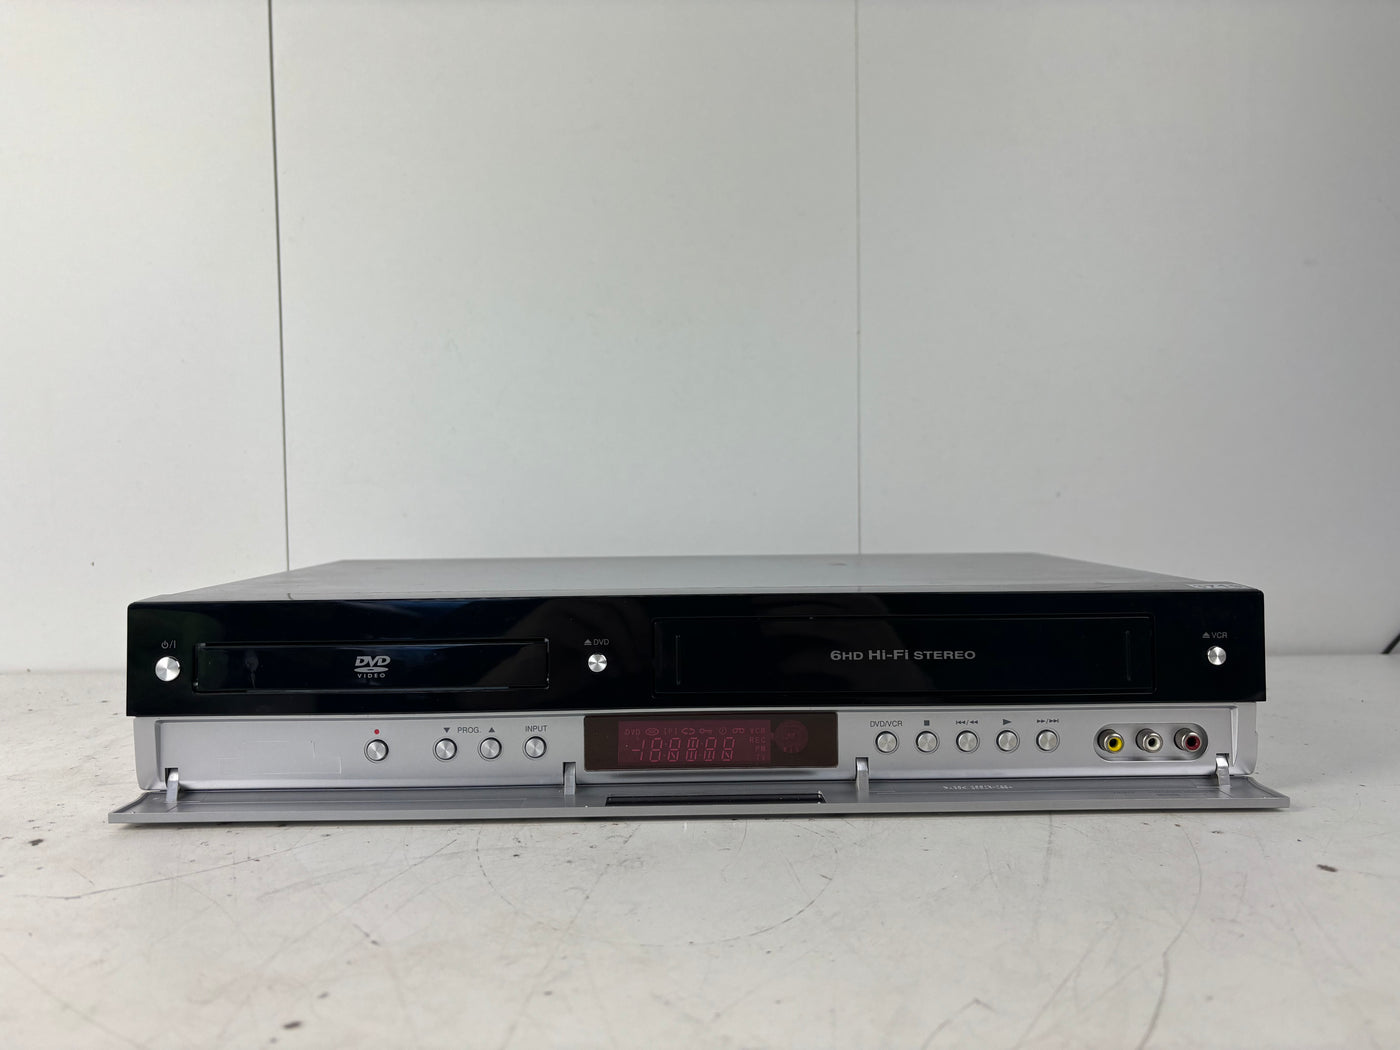 LG V290 Video Cassette Recorder / DVD Combi